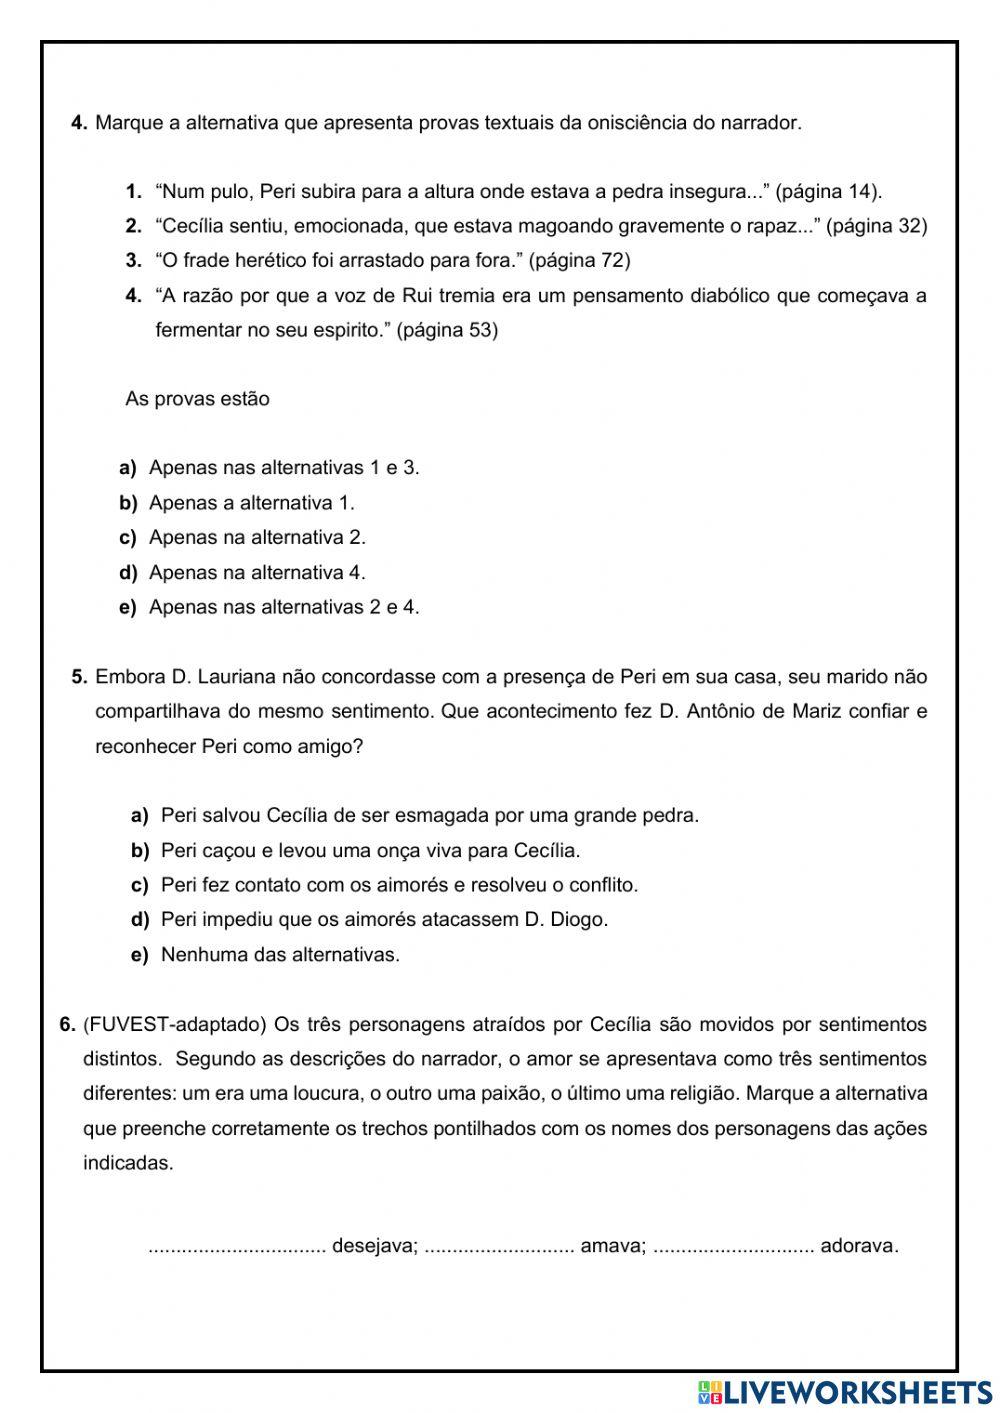 O guarani - josé de alencar worksheet | Live Worksheets